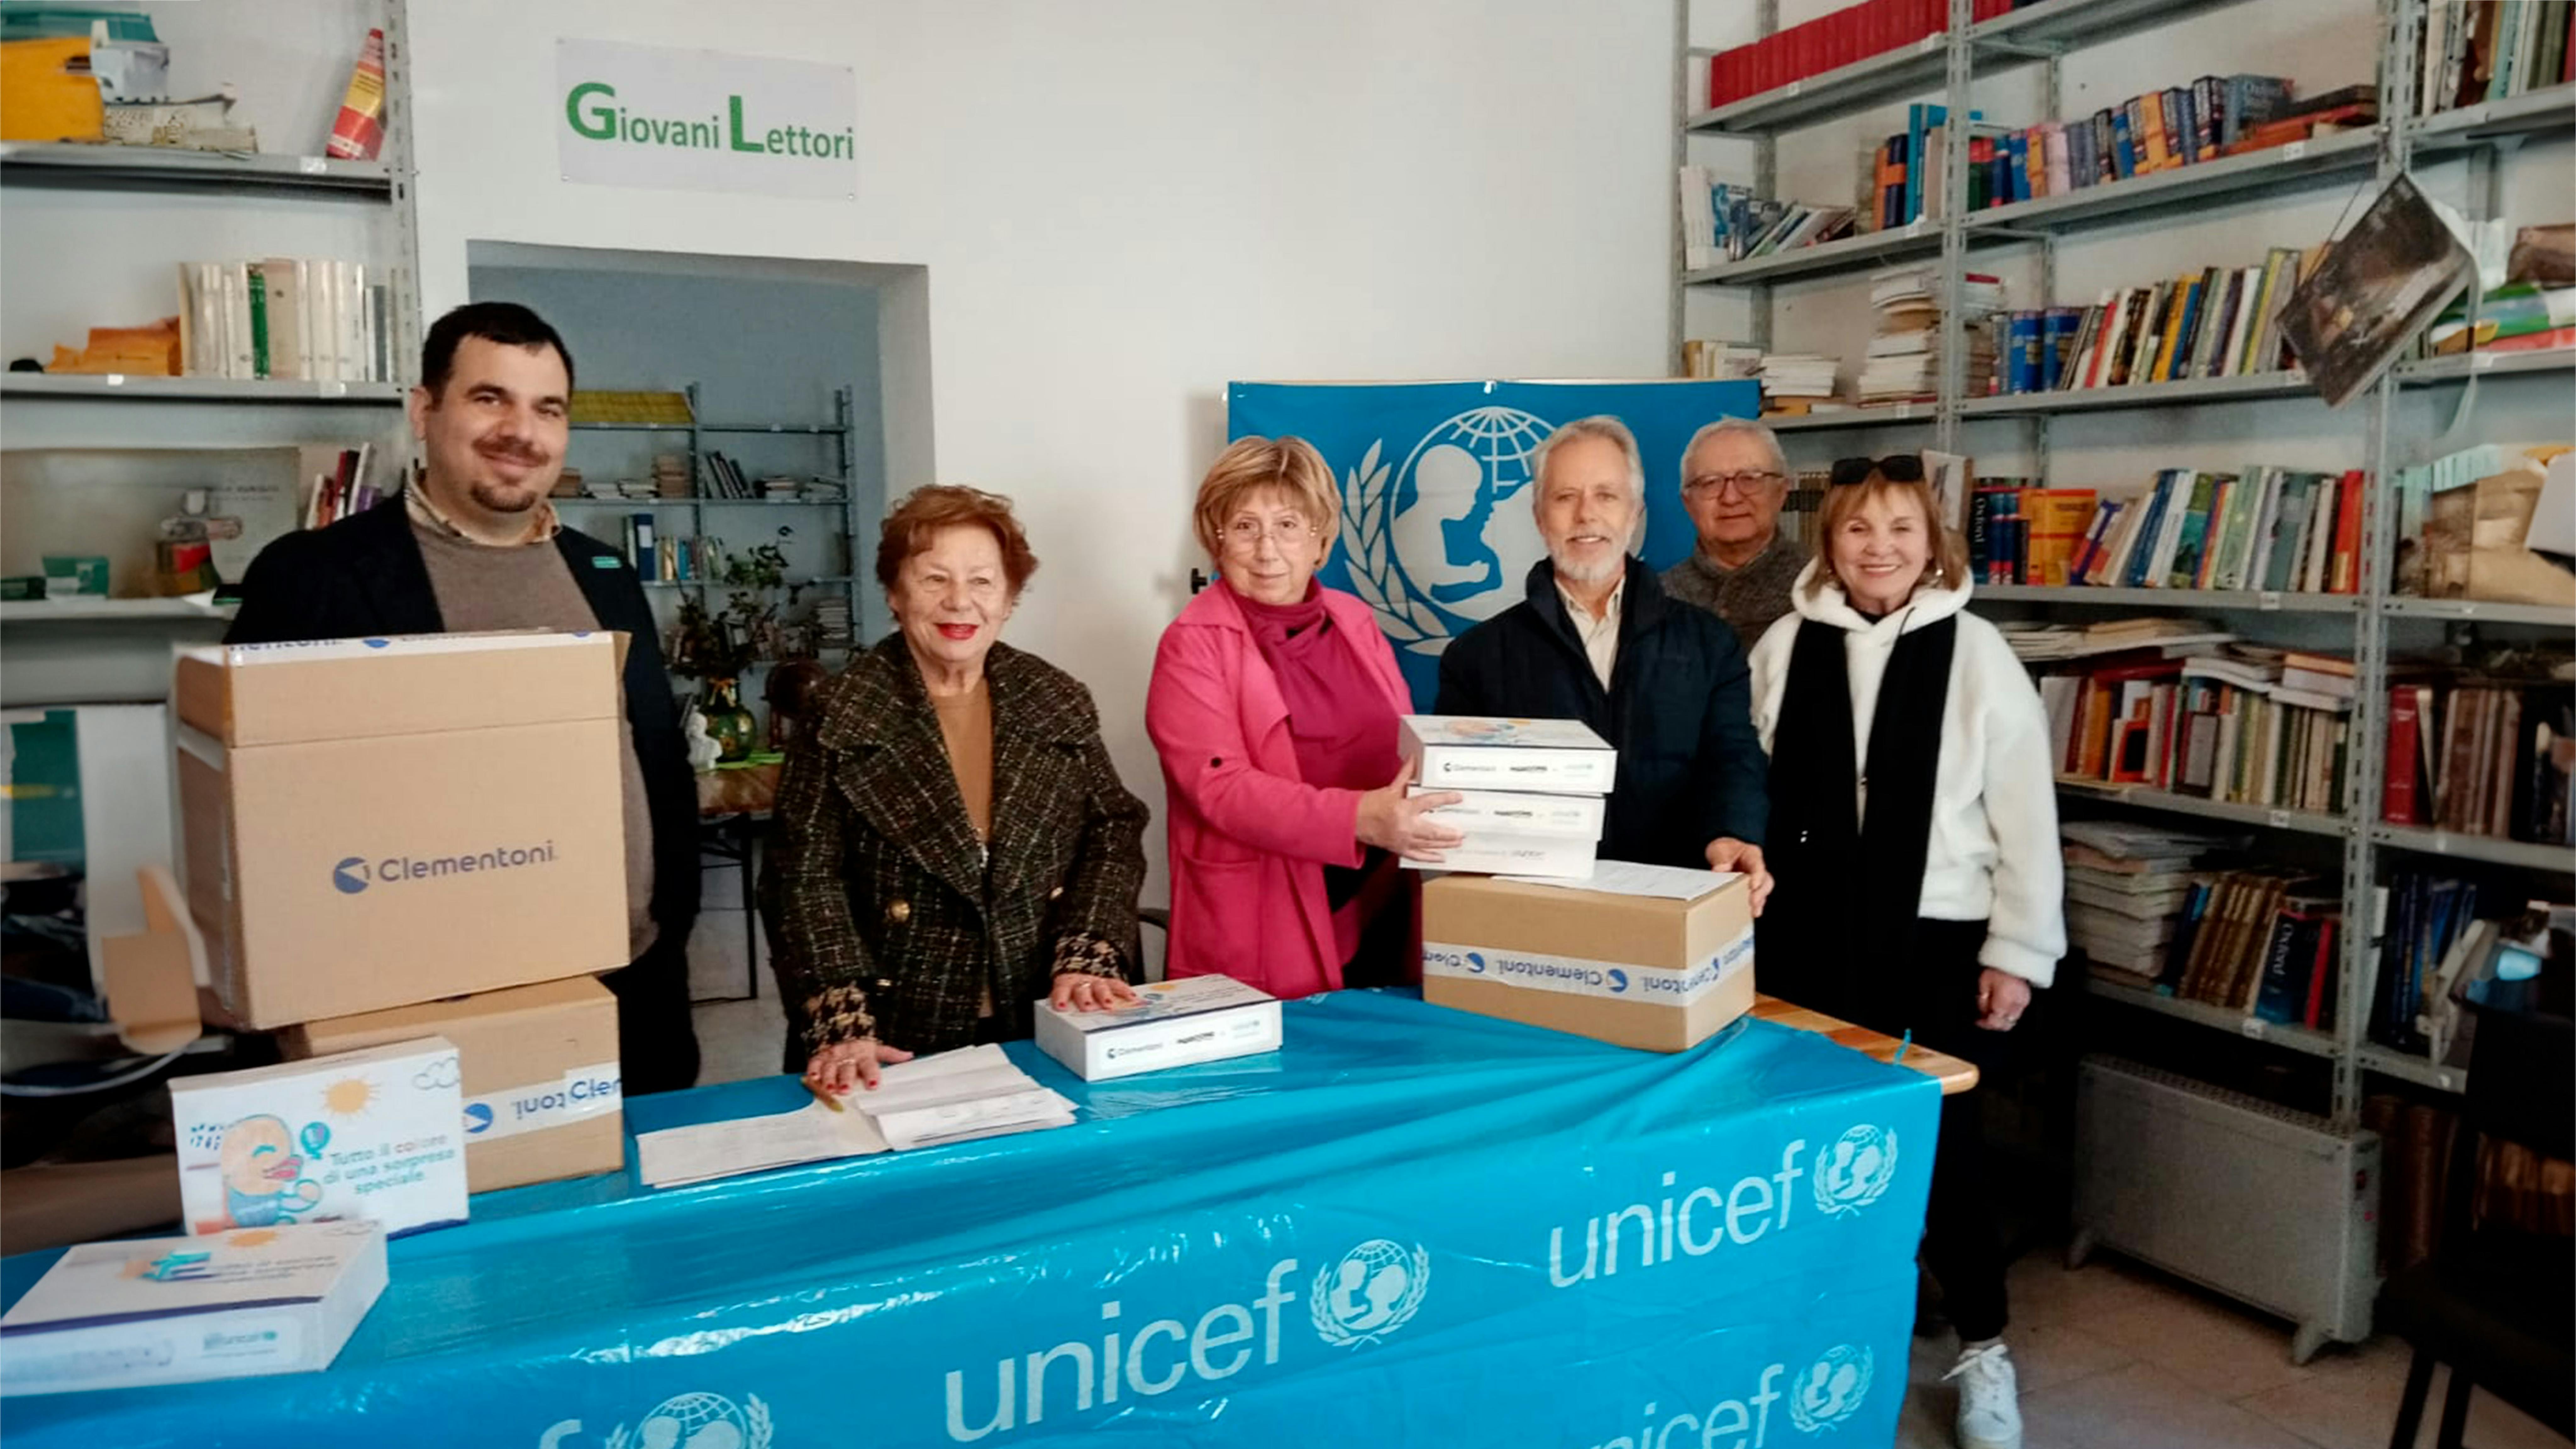 Da sinistra a destra: il volontario UNICEF Alessandro Drago, la Presidente dell’UNICEF Italia Carmela Pace, la Presidente del Comitato Provinciale UNICEF di Siracusa Pina Cannizzo, due referenti delle case famiglia e, fra loro, il Segretario del Comitato Provinciale UNICEF di Siracusa Mario Rizza.